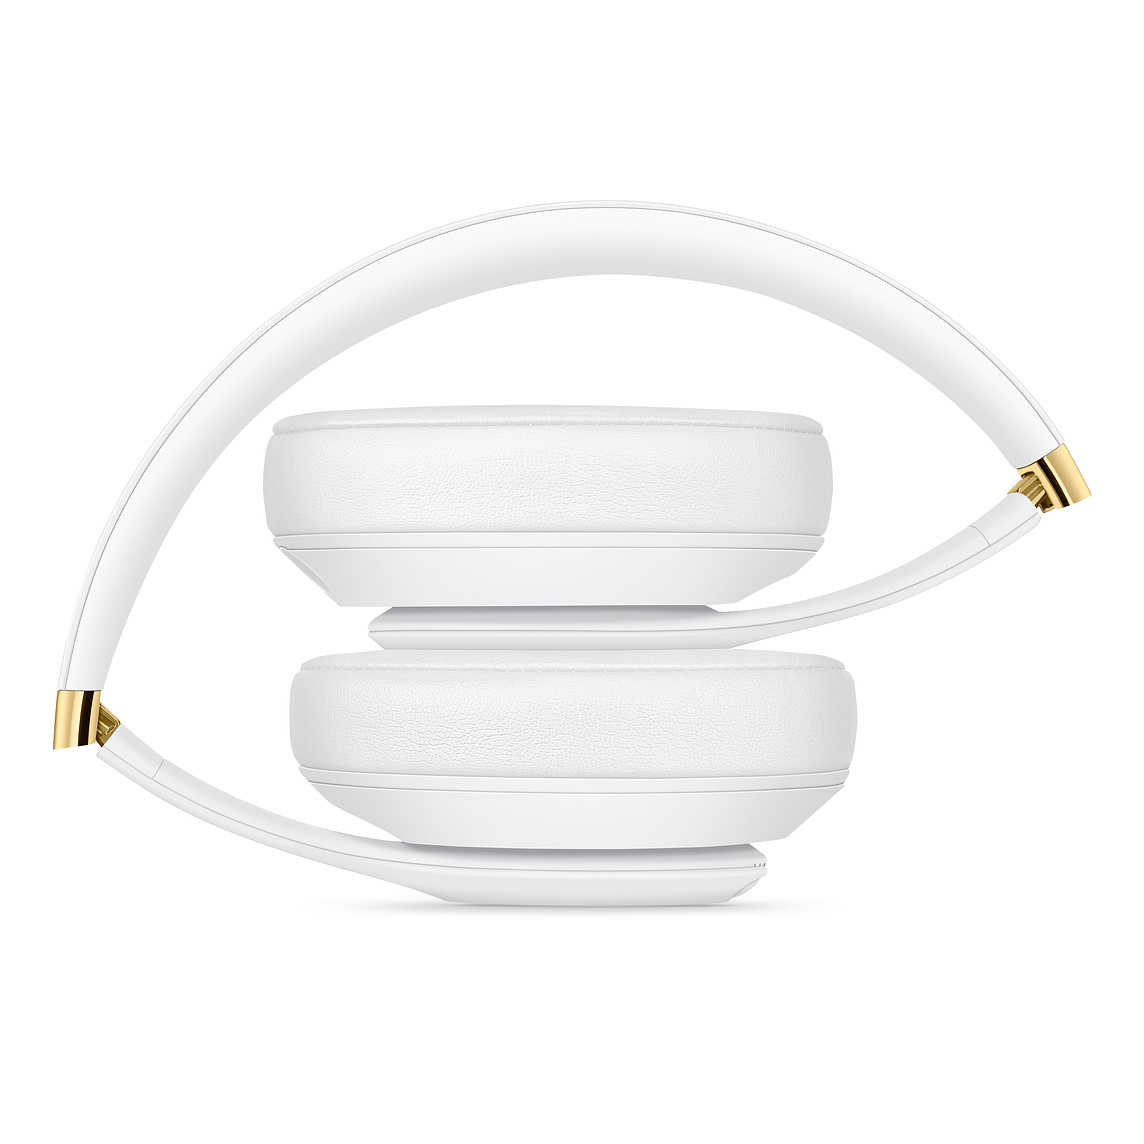 【Beats】Studio3 Wireless 白色 無線藍芽降噪 頭戴式耳機 ★免運★